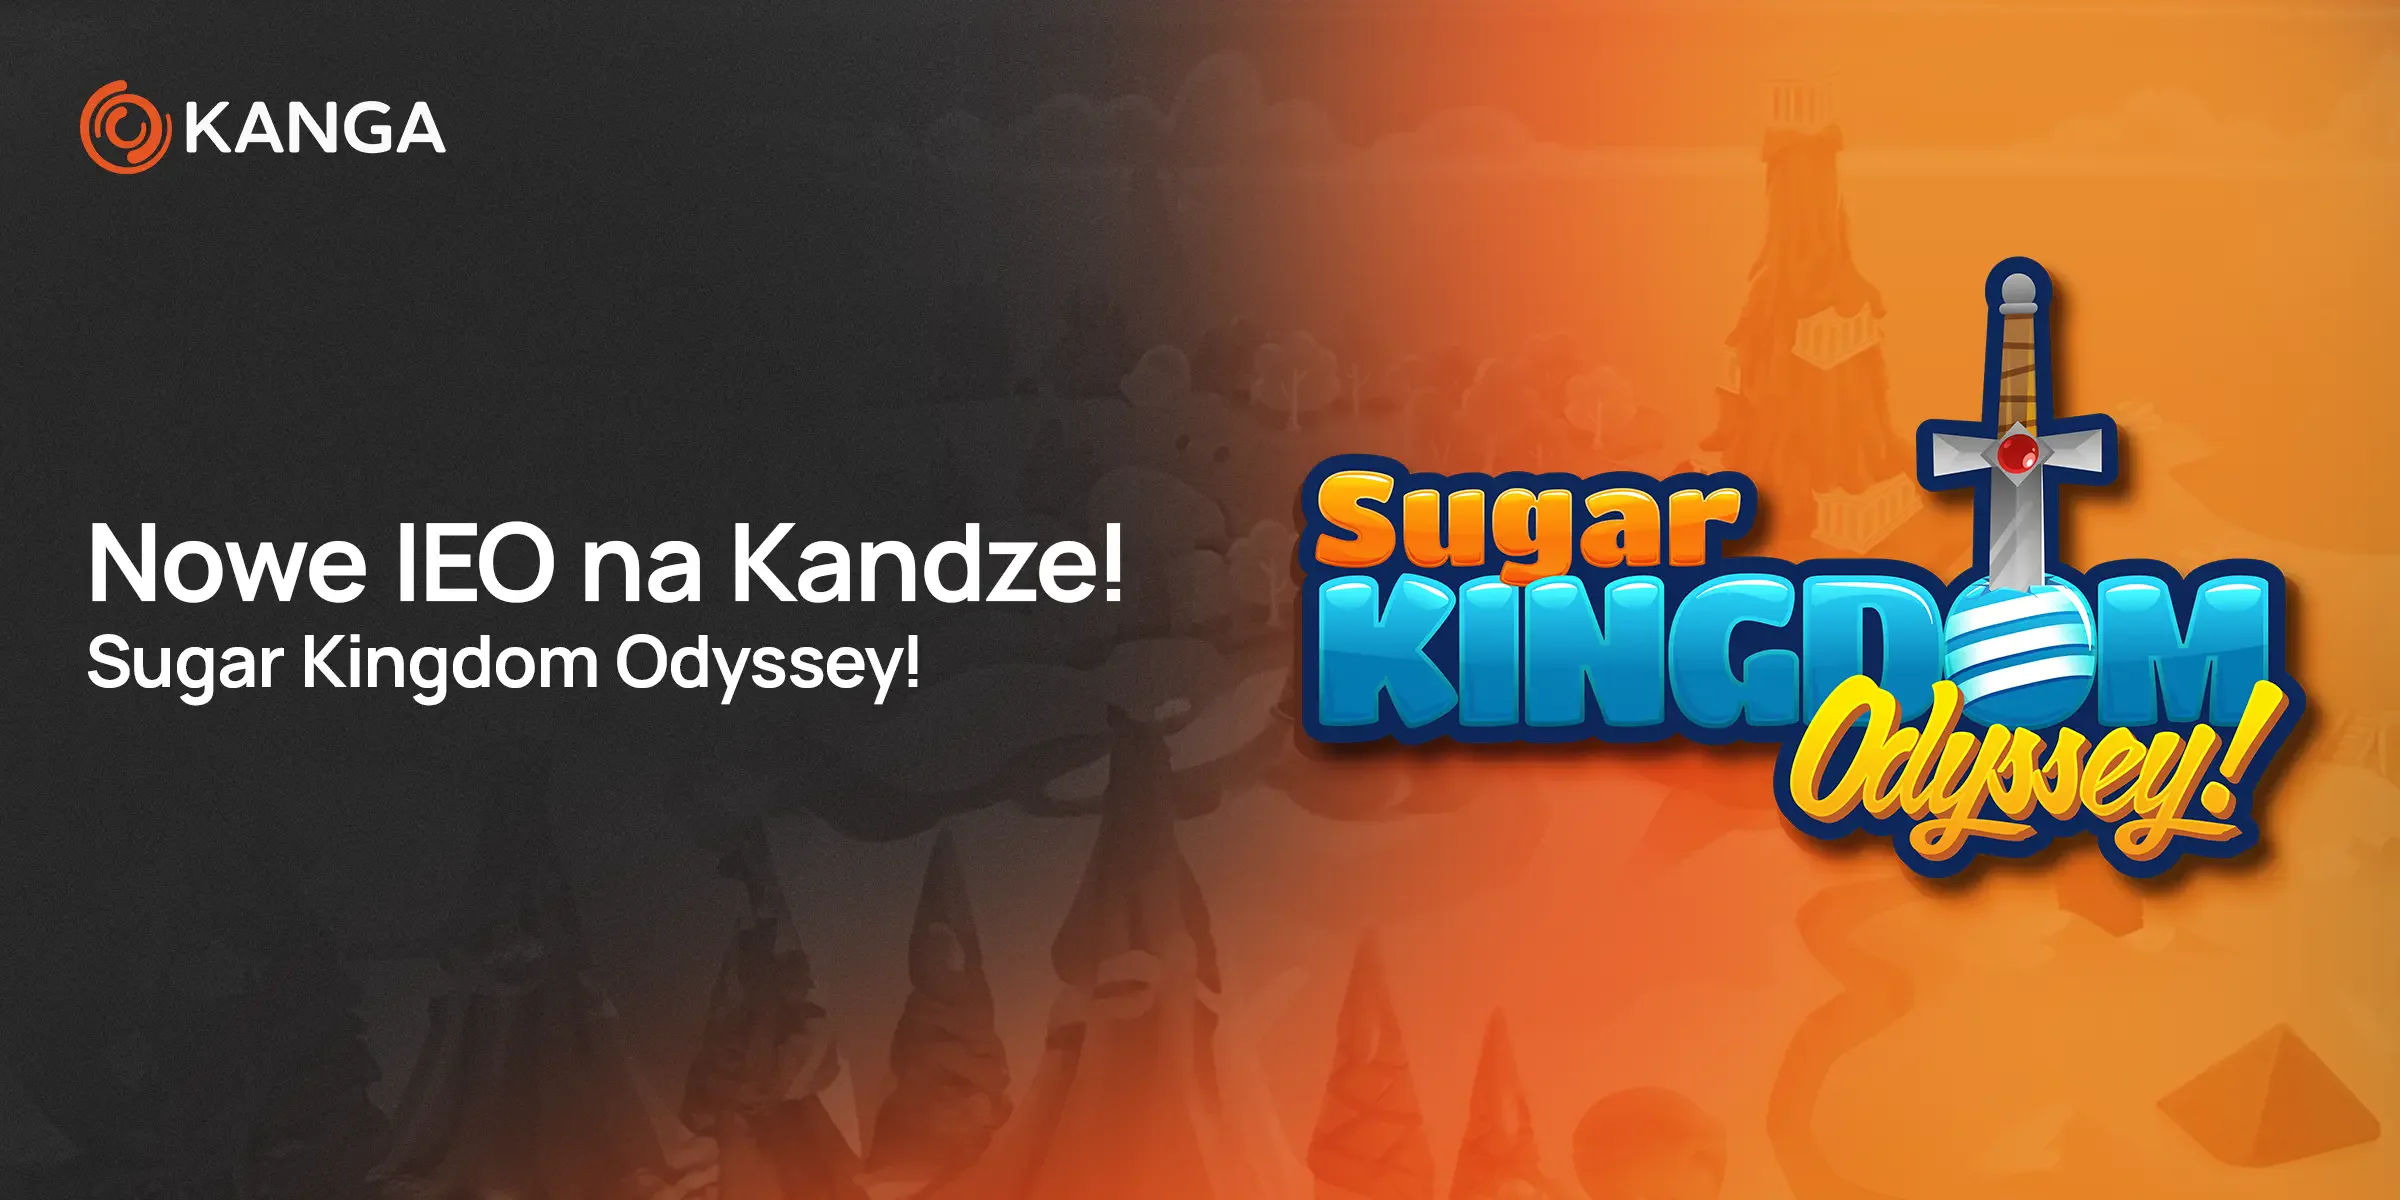 Nowe IEO na Kandze - Sugar Kingdom Odyssey!